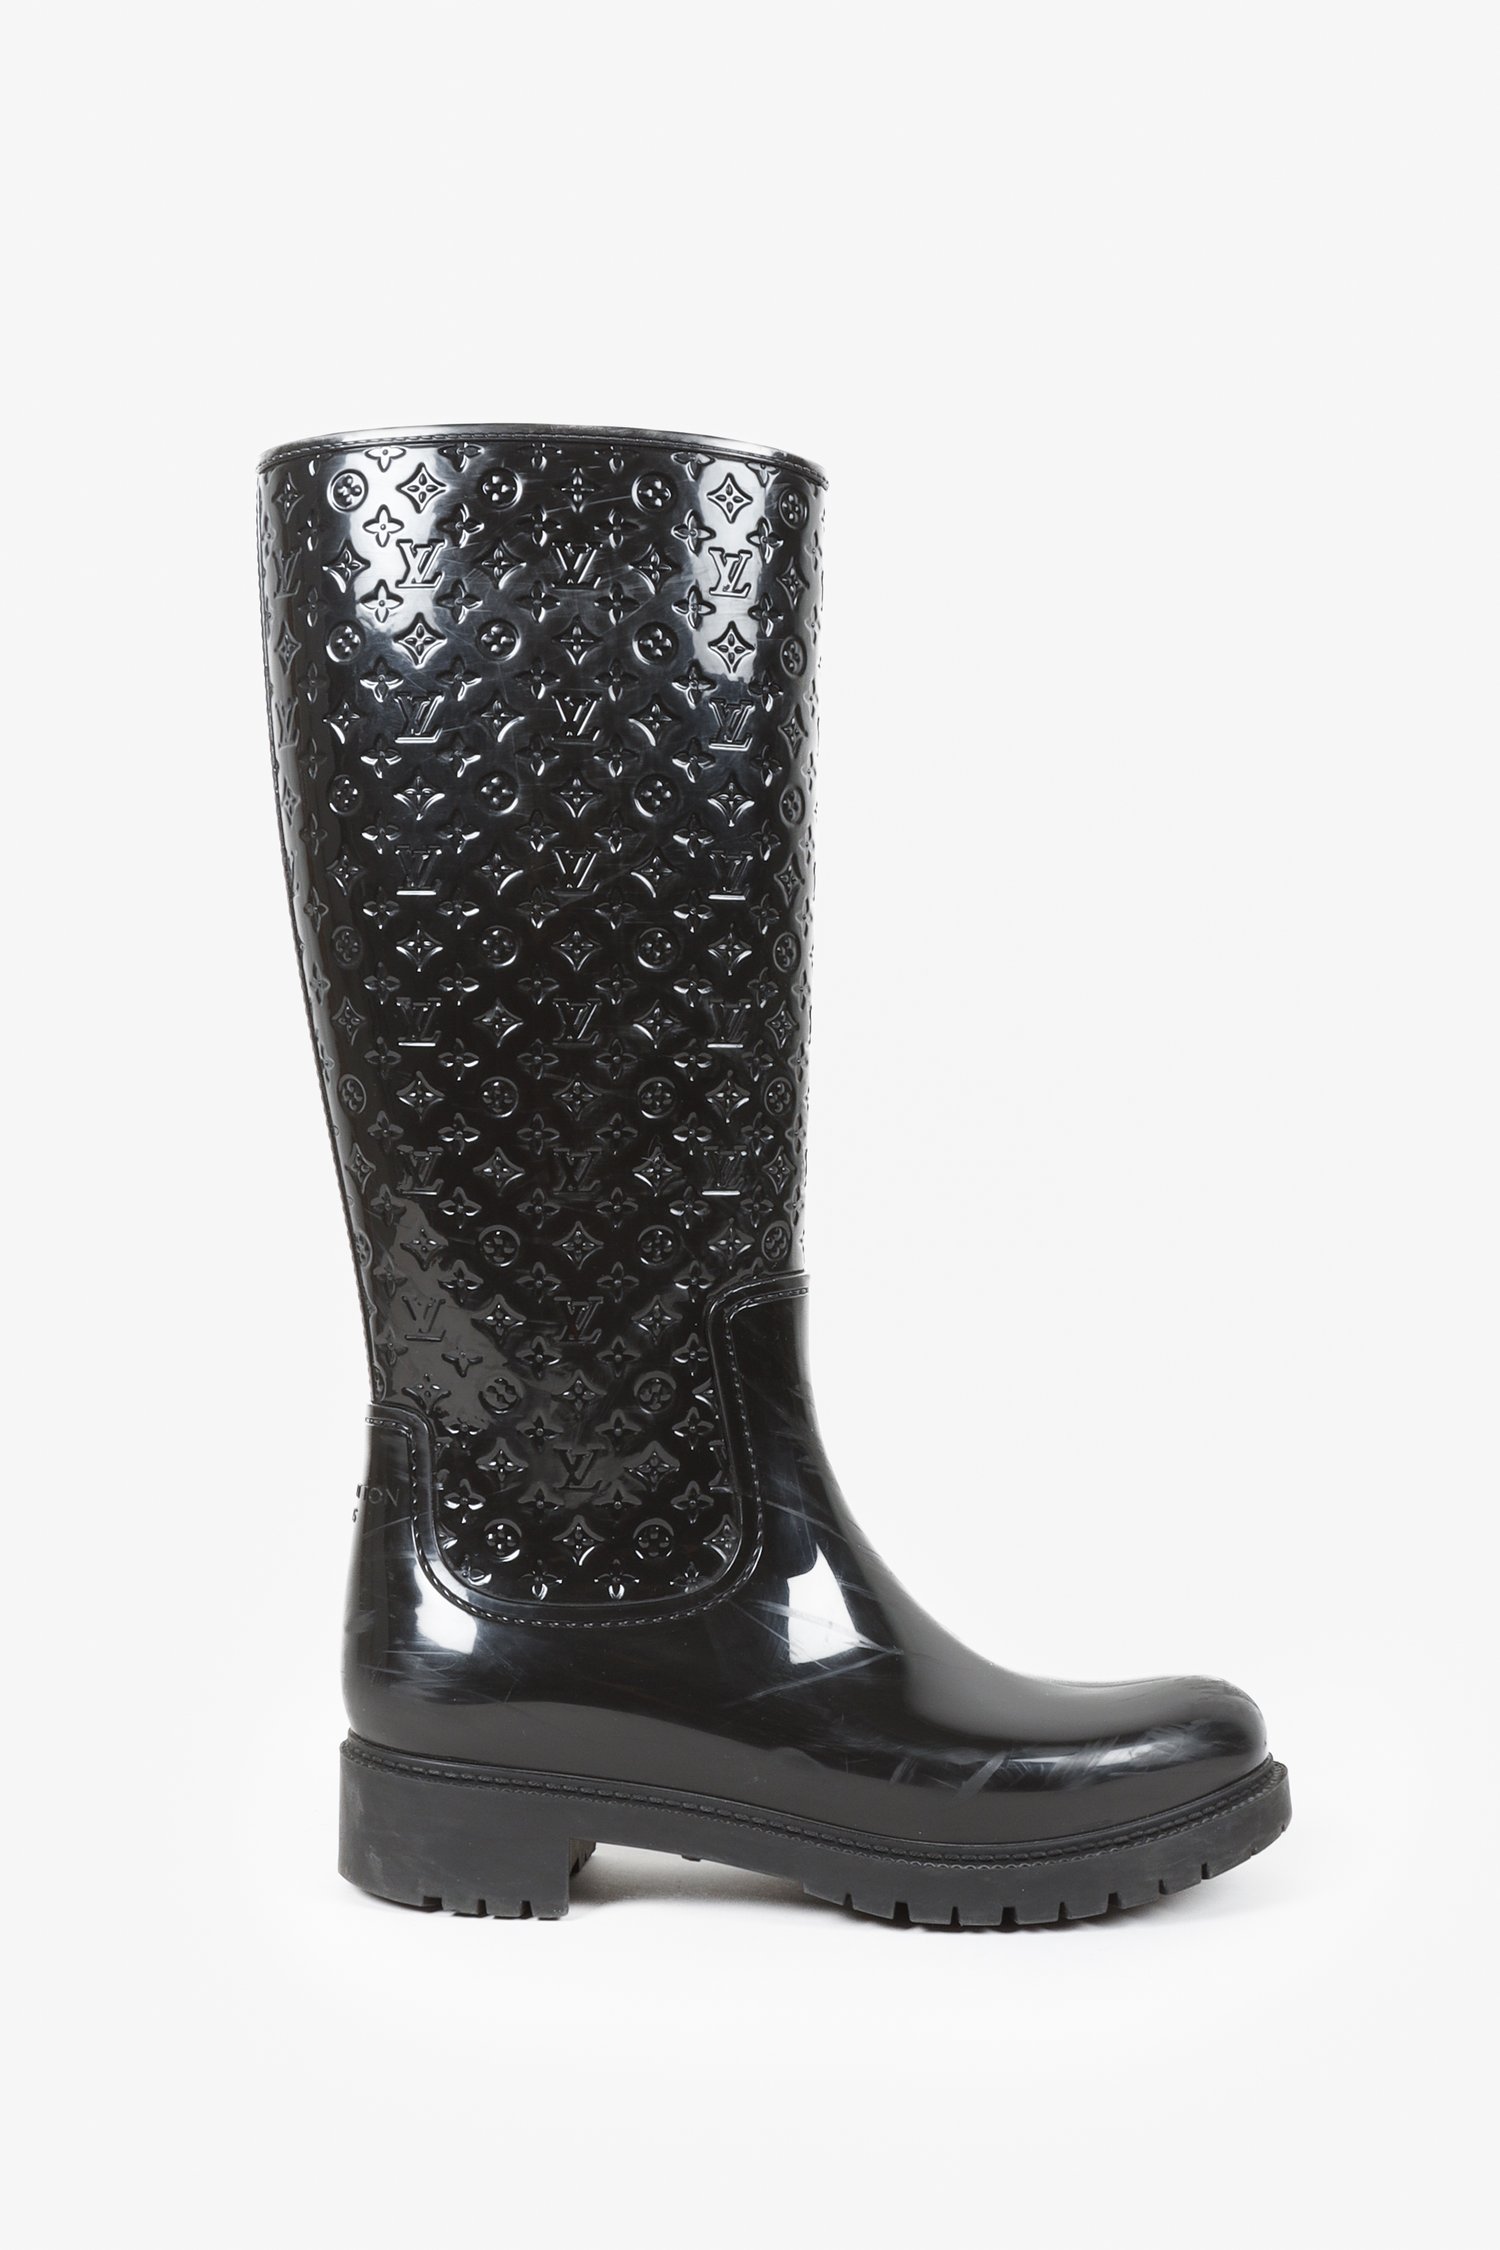 Louis Vuitton LV Monogram Rubber Rain Boots - Black Boots, Shoes -  LOU773000